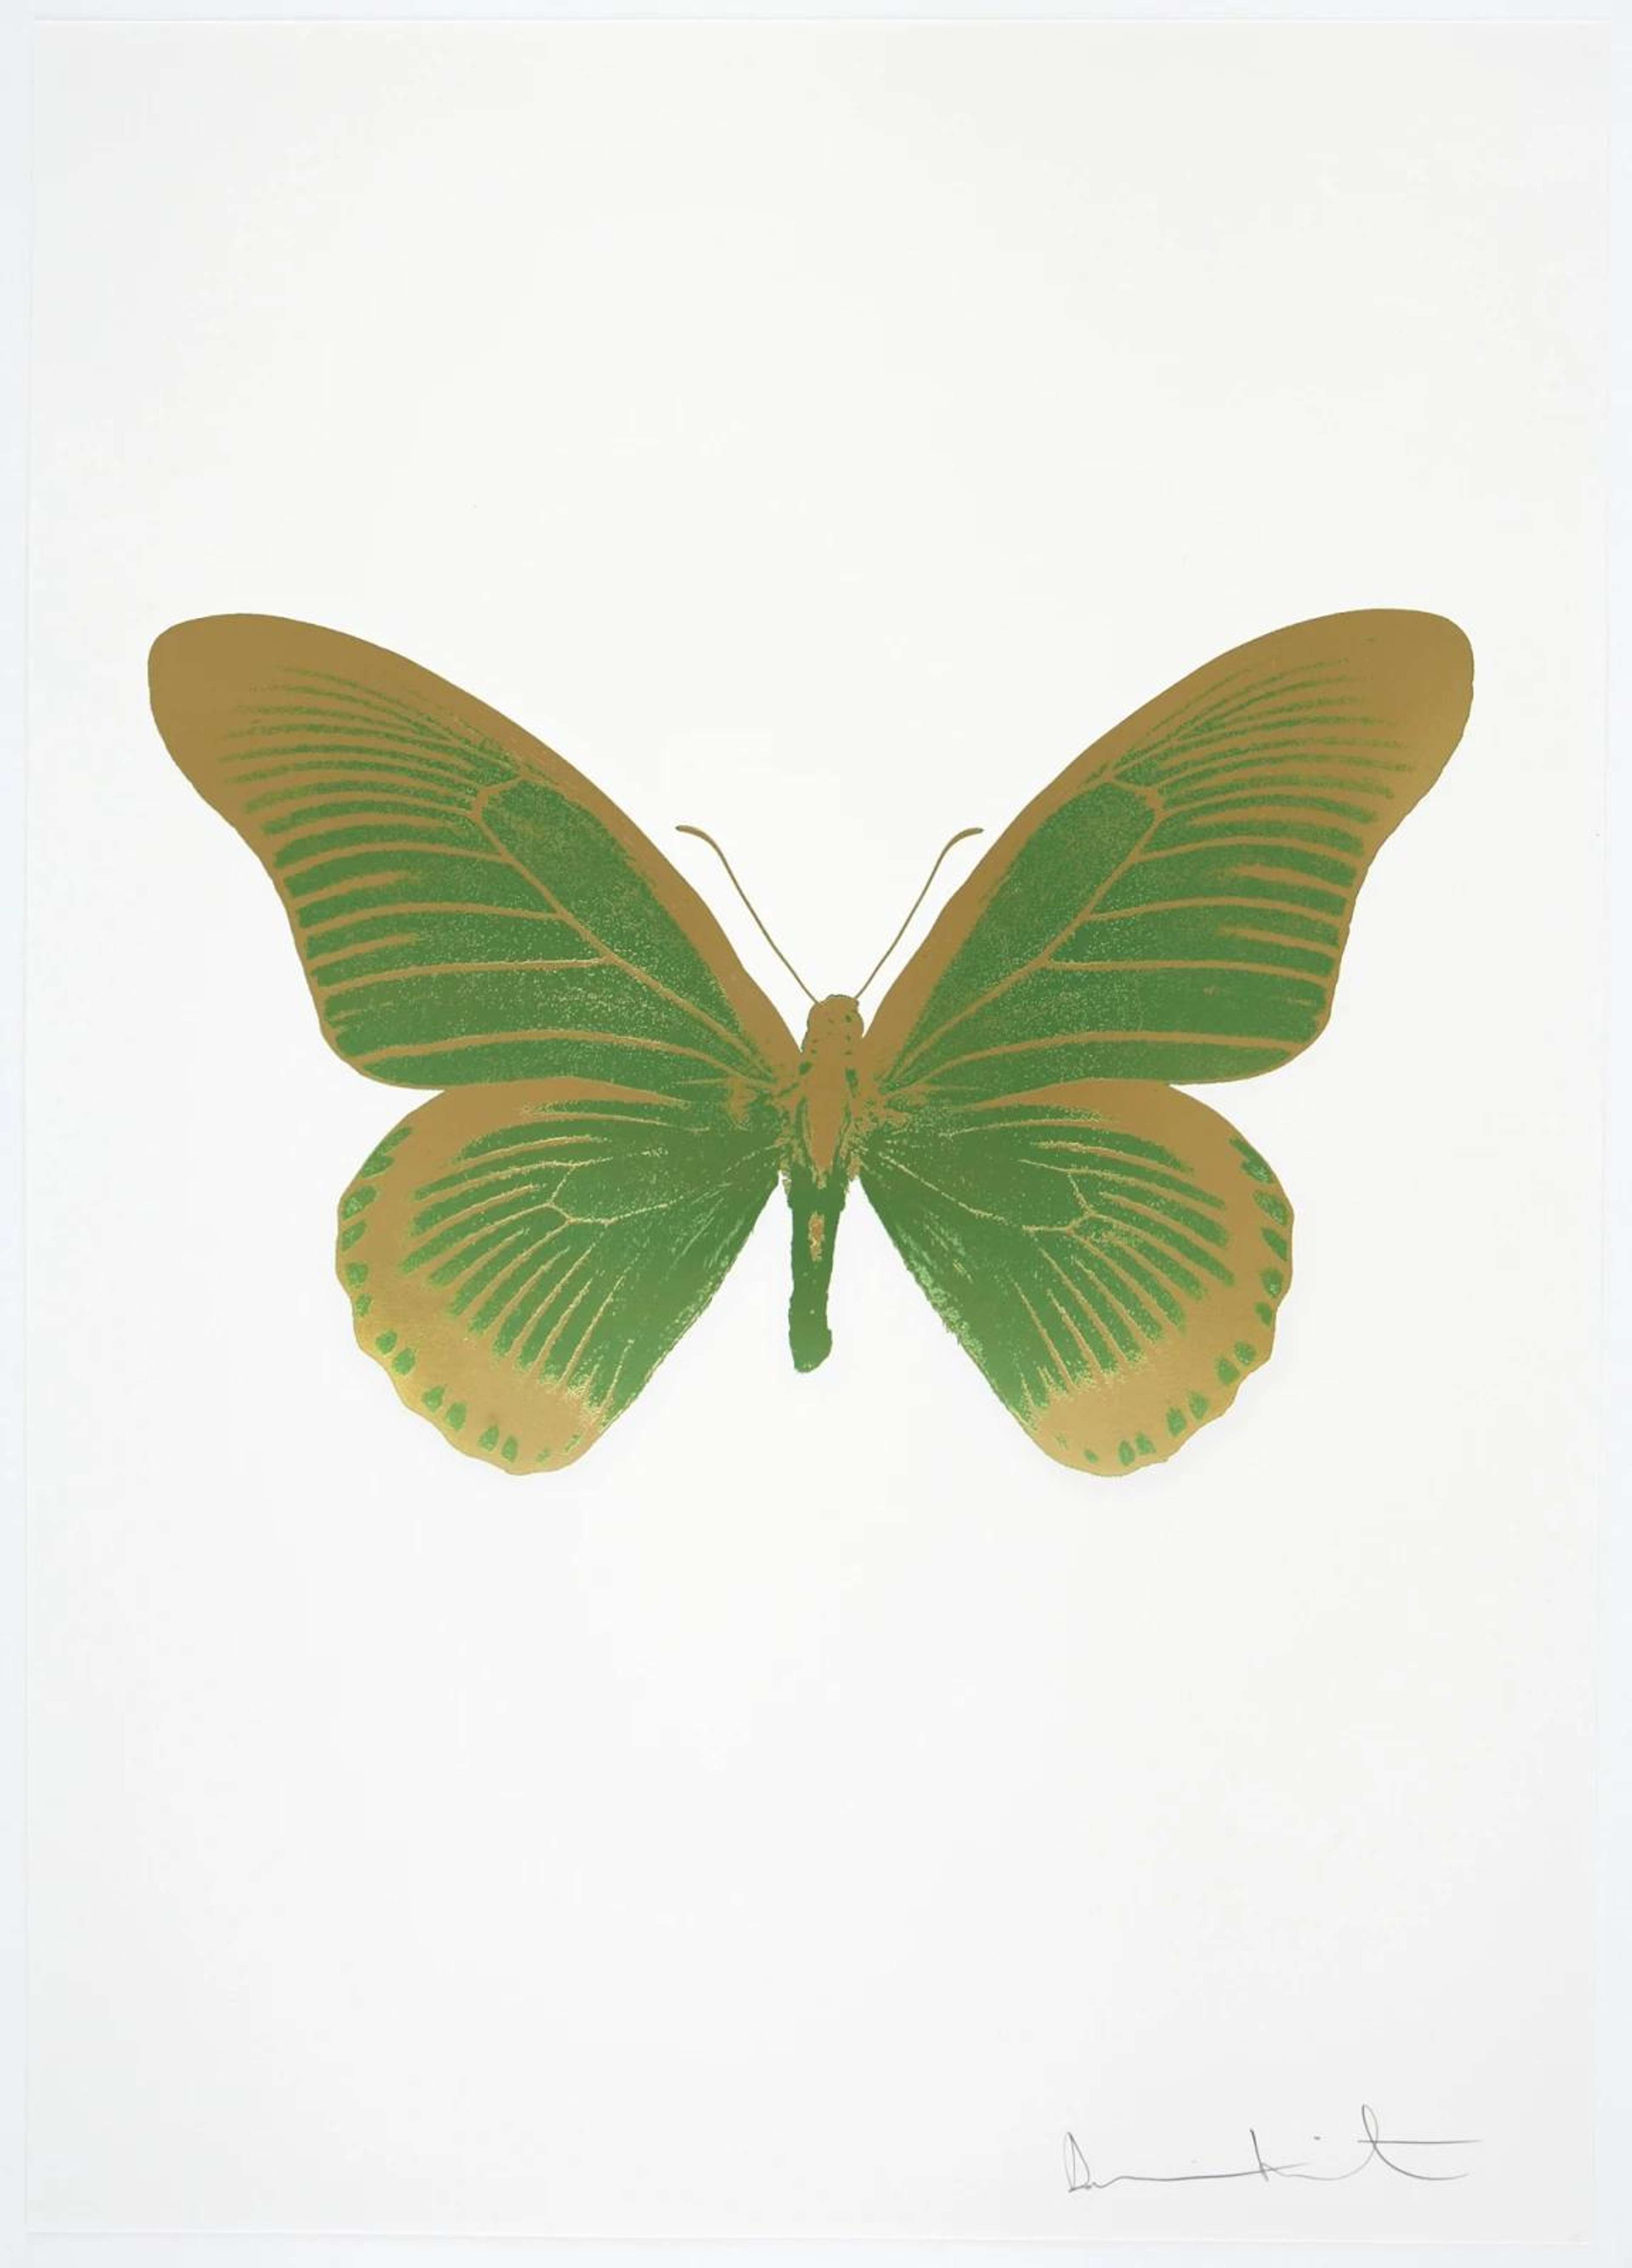 The Souls IV (leaf green, sunset gold) - Signed Print by Damien Hirst 2010 - MyArtBroker